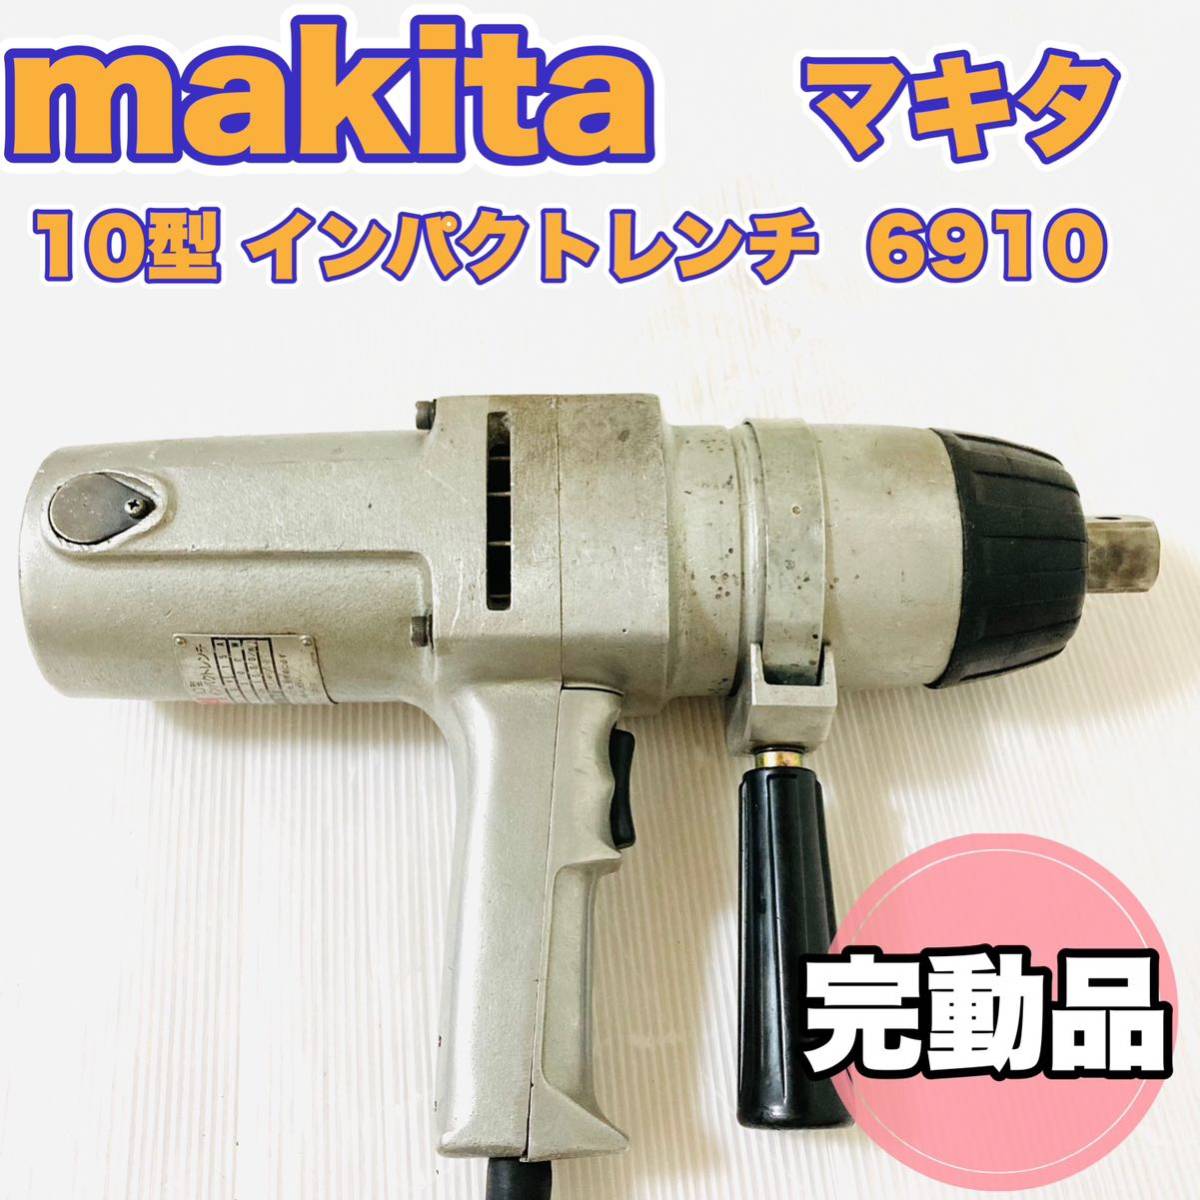 ☆完動品☆ makitaマキタ 10型インパクトレンチ 6910 100V